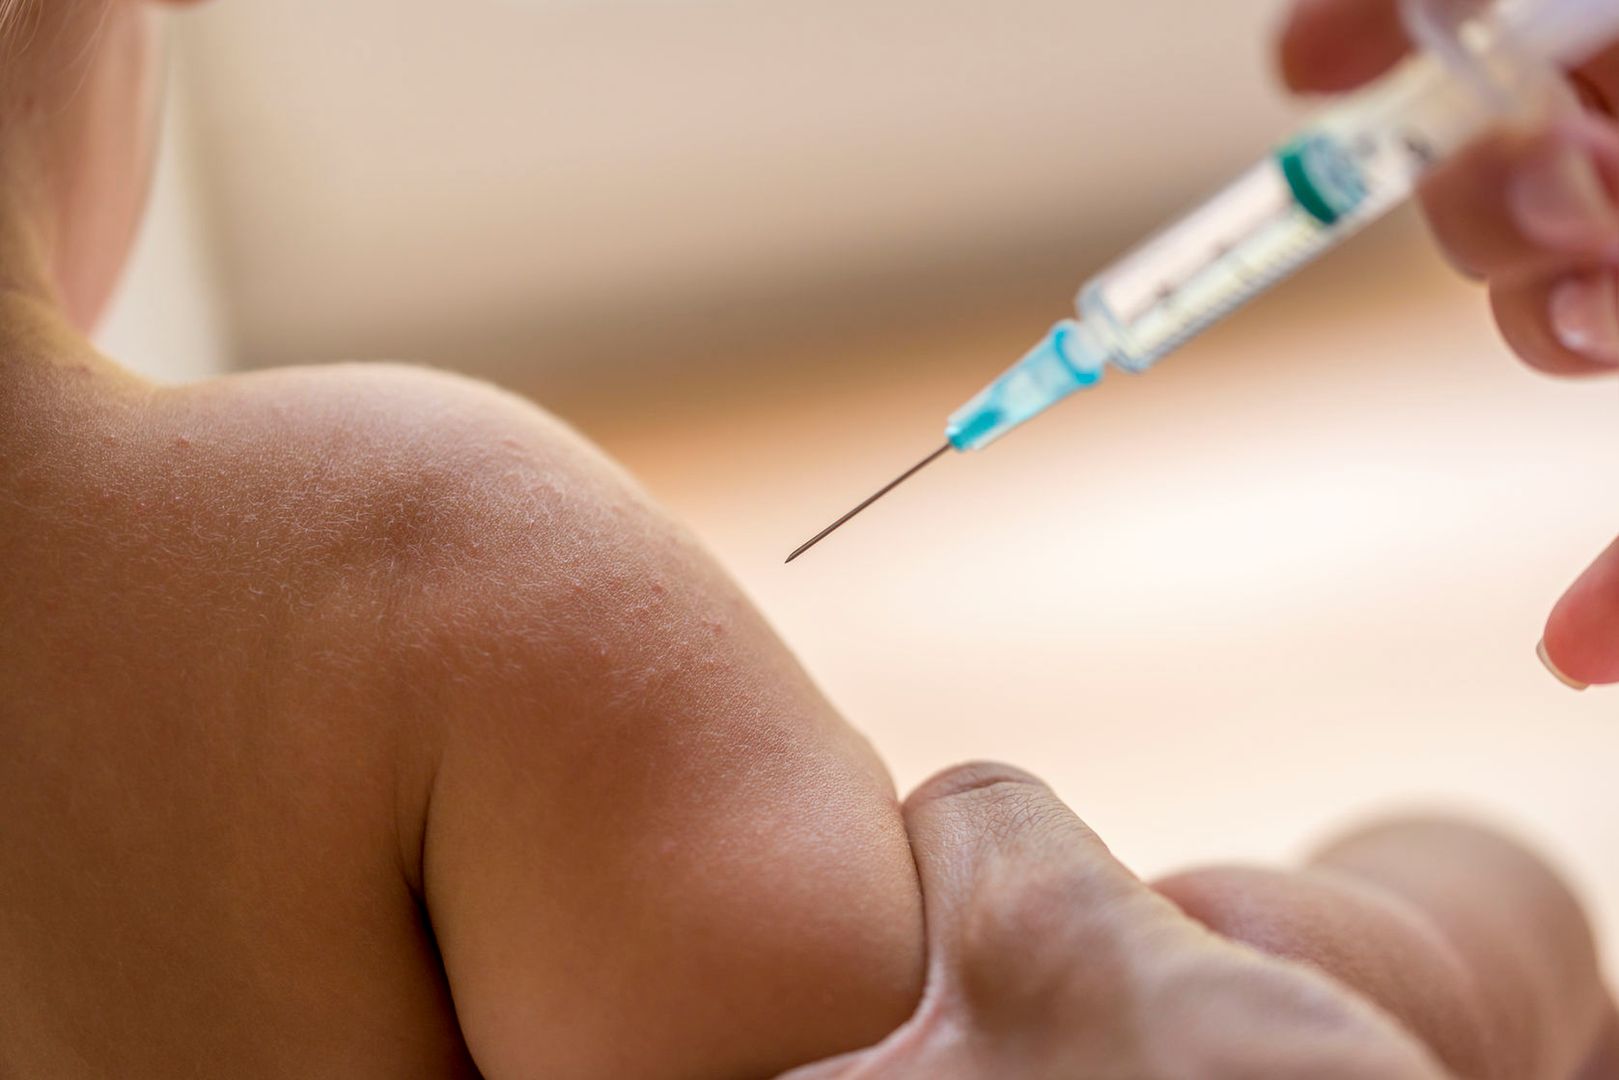 Szczepionki przeznaczone do utylizacji były podawane pacjentom. Kilkaset przypadków w całej Polsce